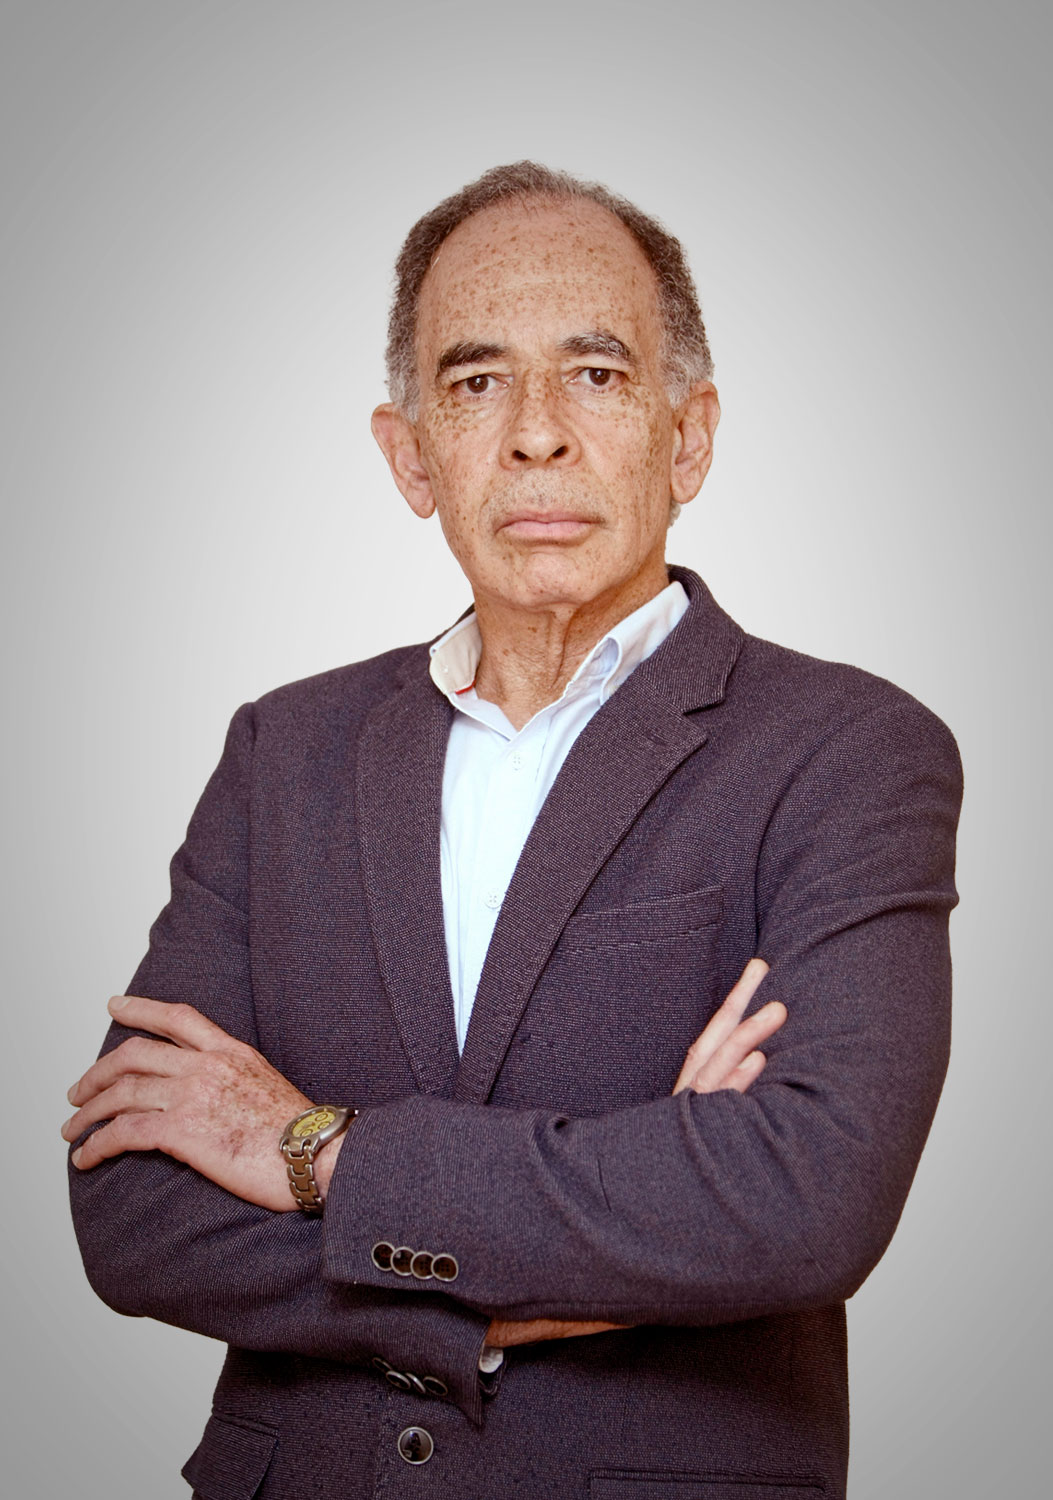 Альберто Альфонсо Гарсия